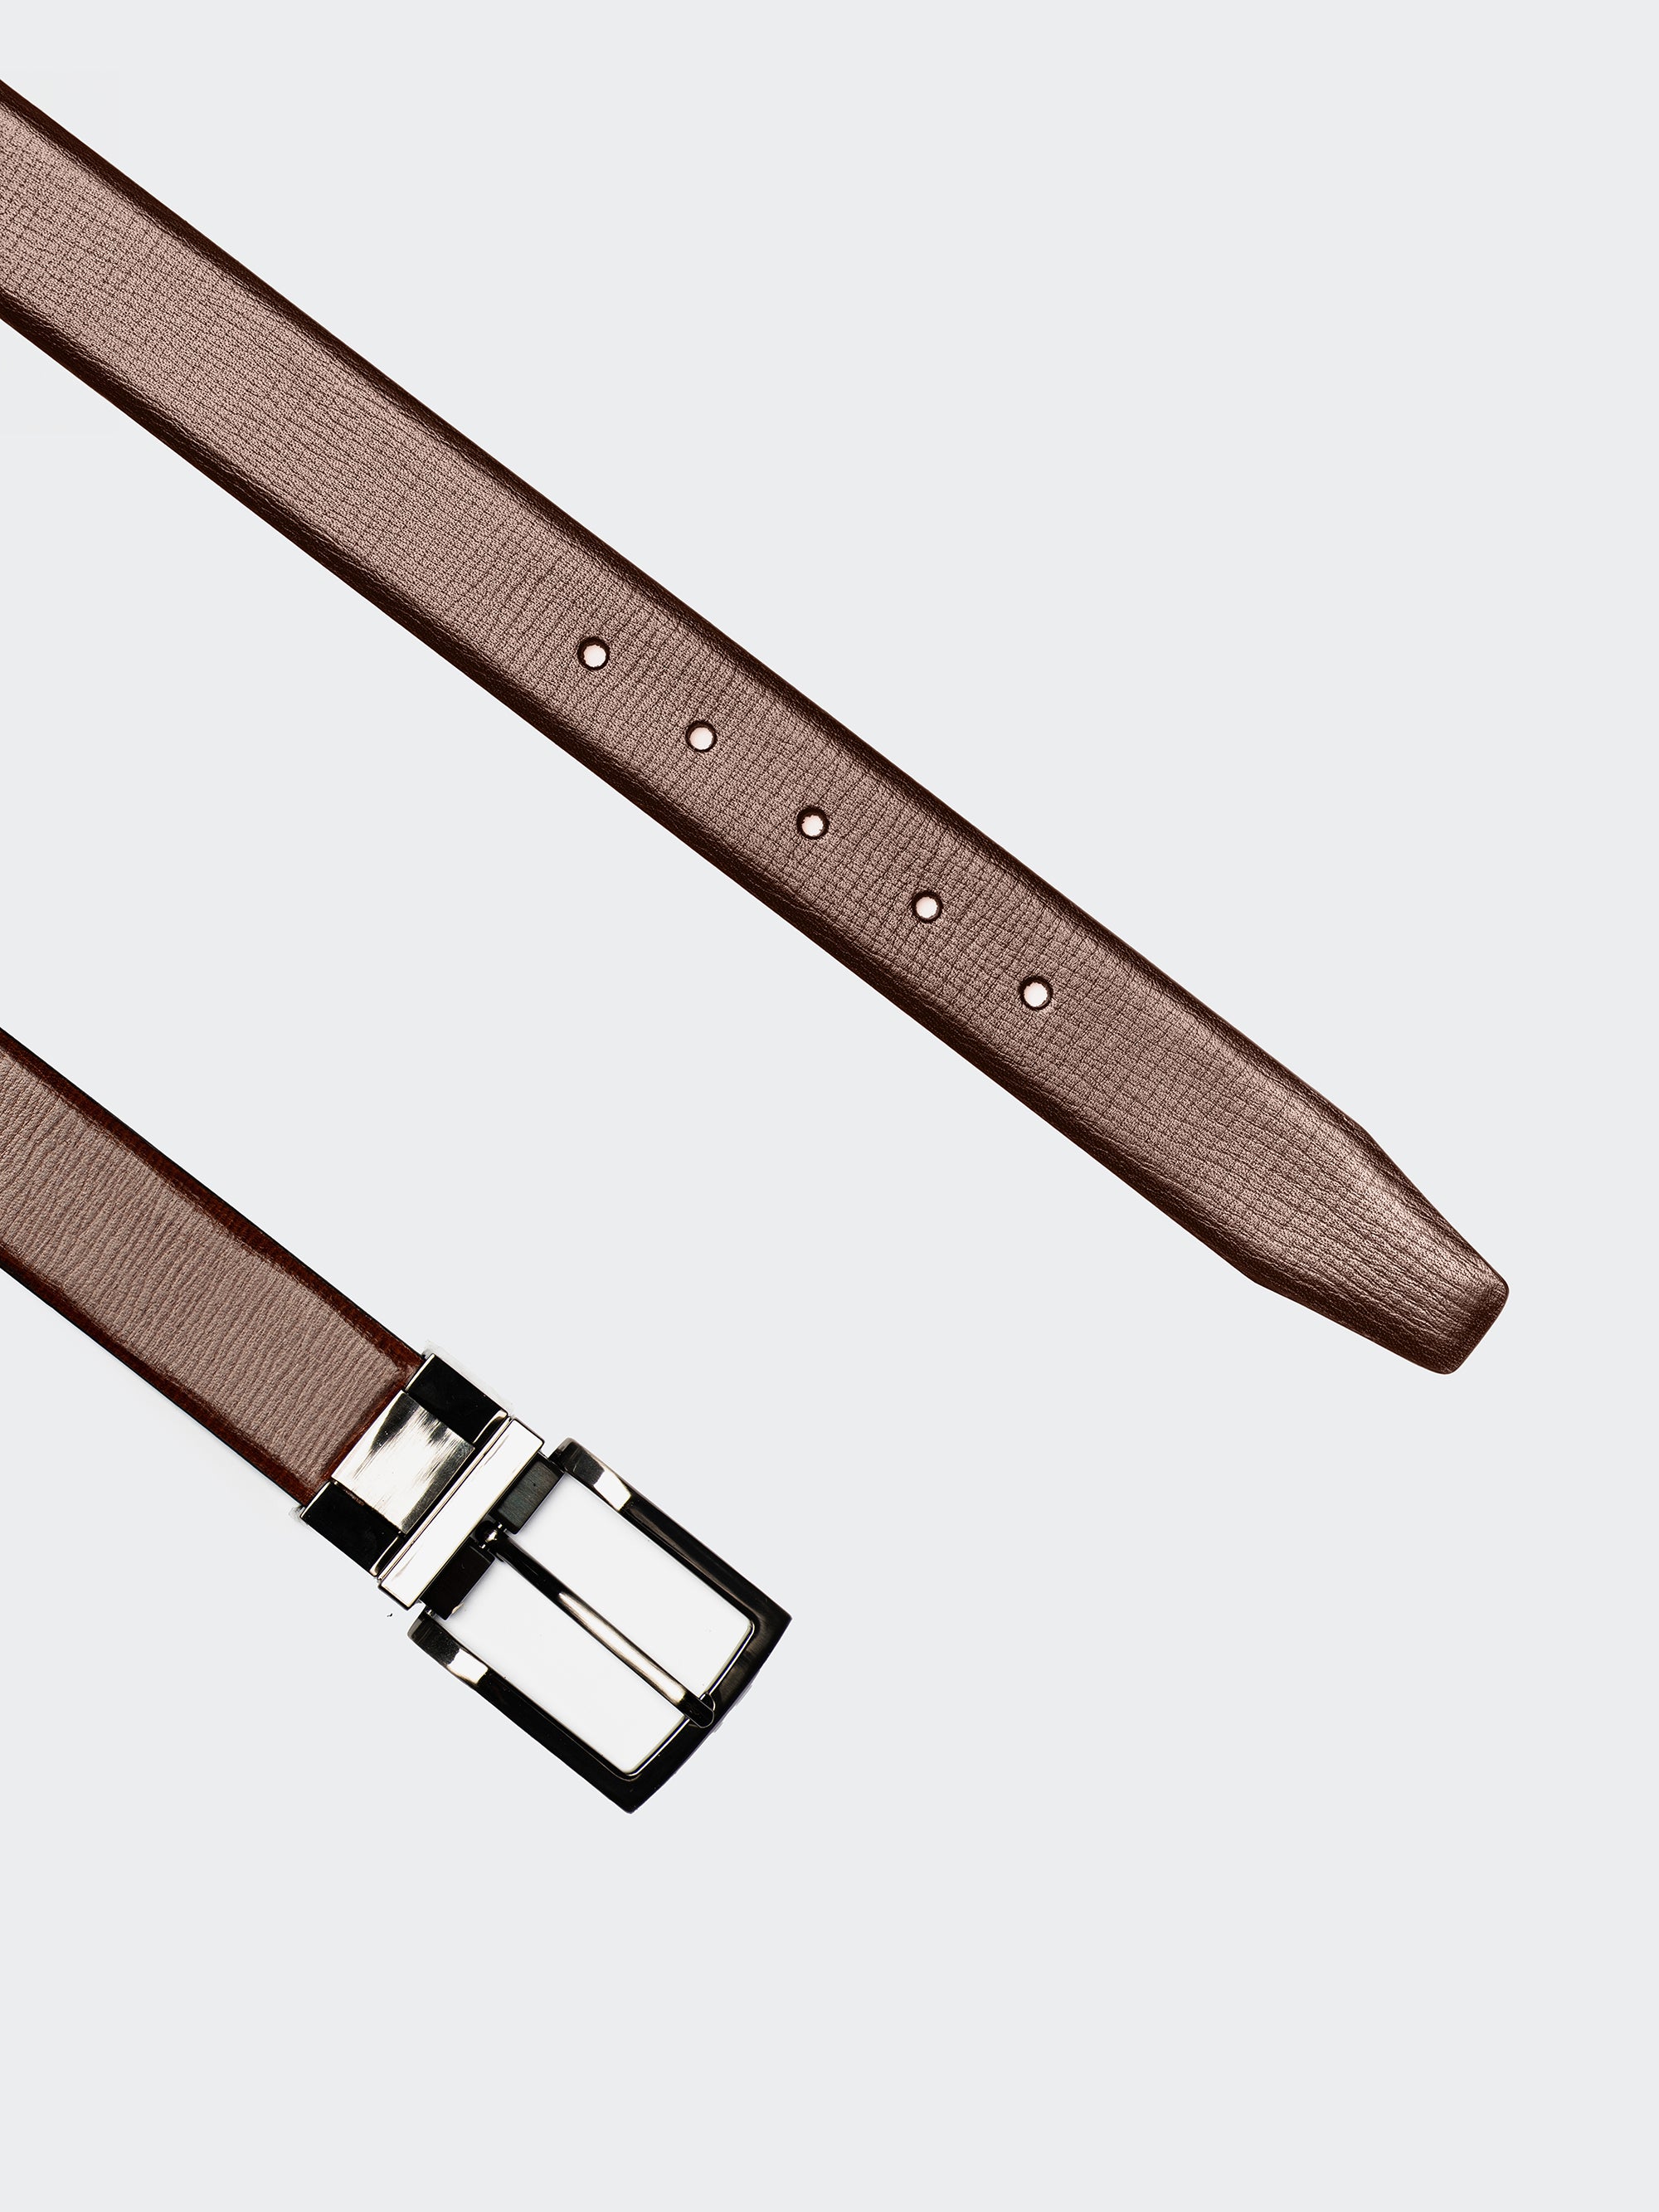 Tan Pattern - Italian Leather Belt